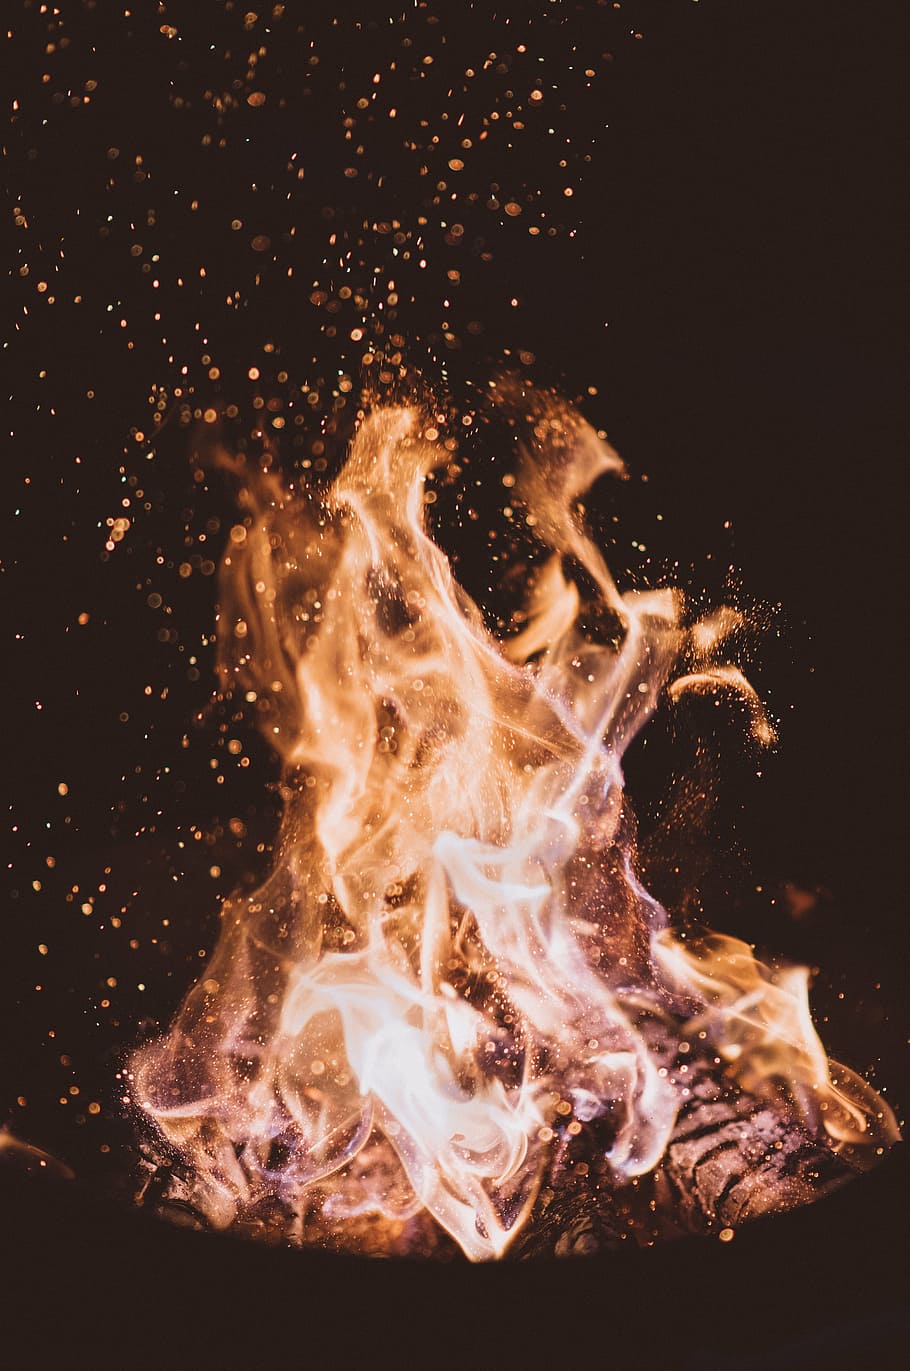 タイムラプス撮影, 炎, 火, 光, 薪, 木炭, 灰, 熱, たき火, キャンプファイヤー